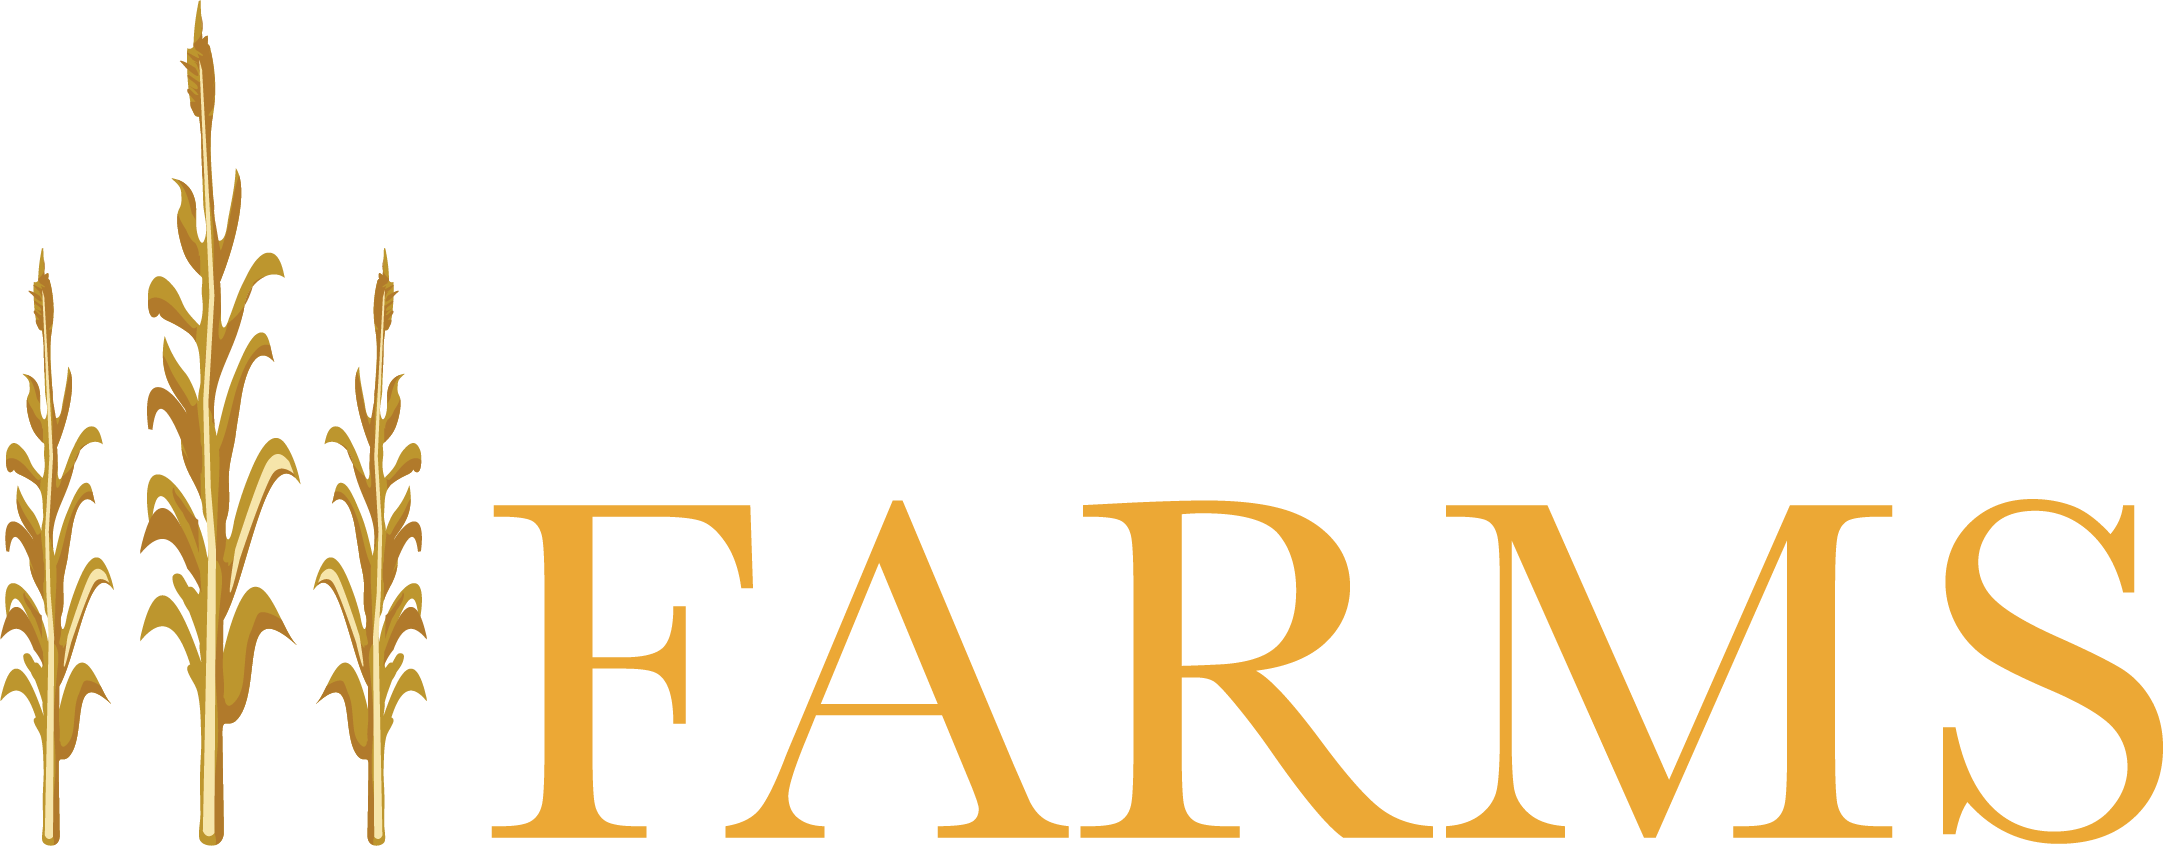 Godbersen Farms